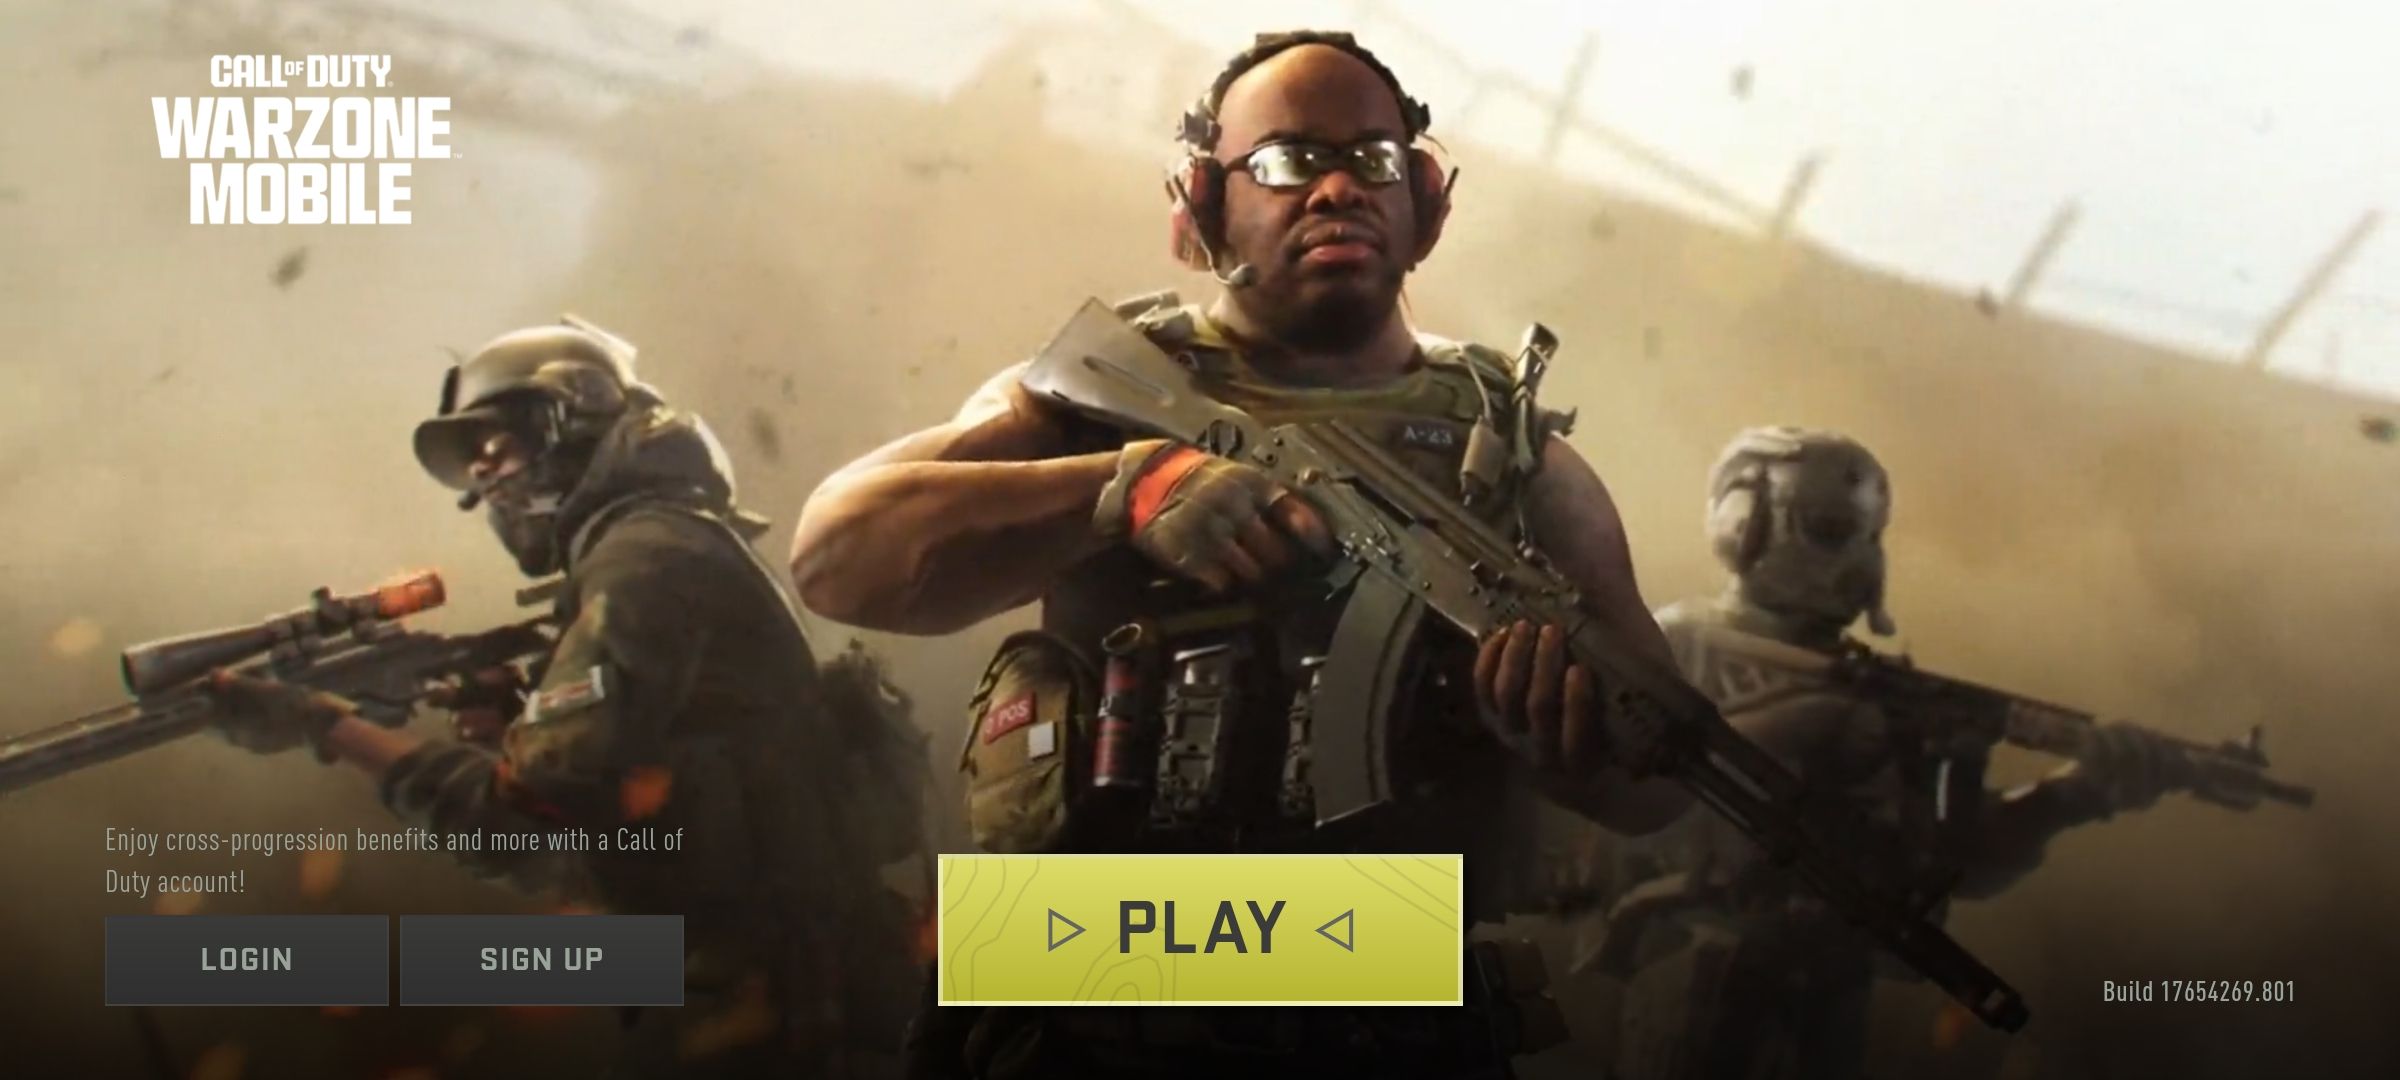 Captura de tela da tela de jogo do Call of Duty Warzone Mobile